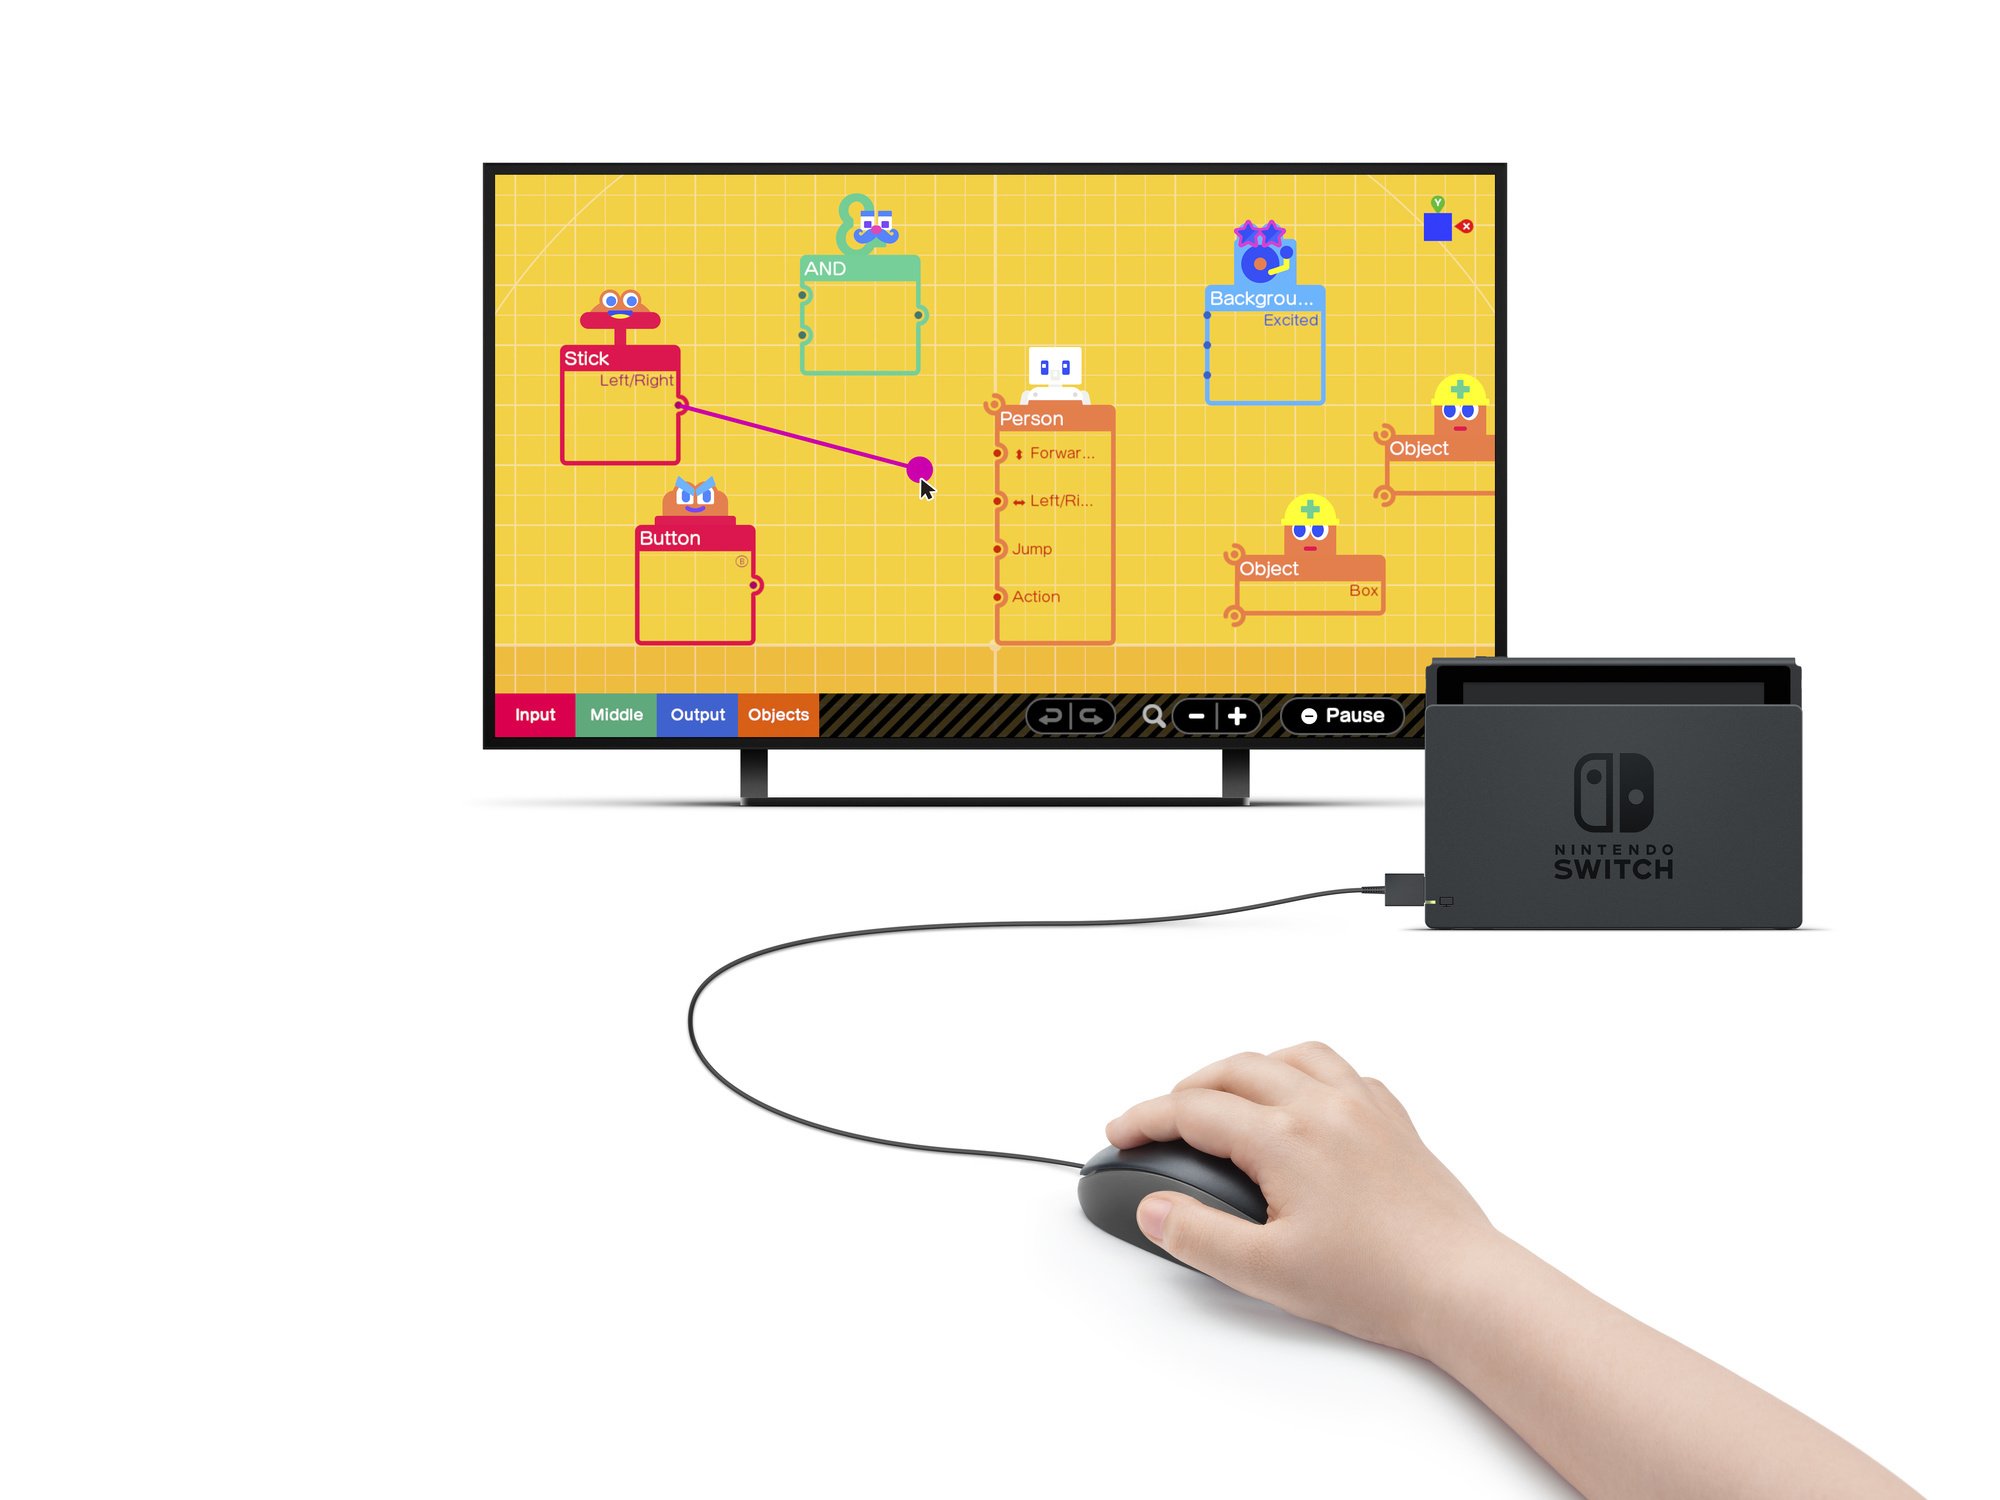 Gamestudio is met de controllers te spelen, maar Nintendo geeft zelf aan dat een muis makkelijker is., Nintendo